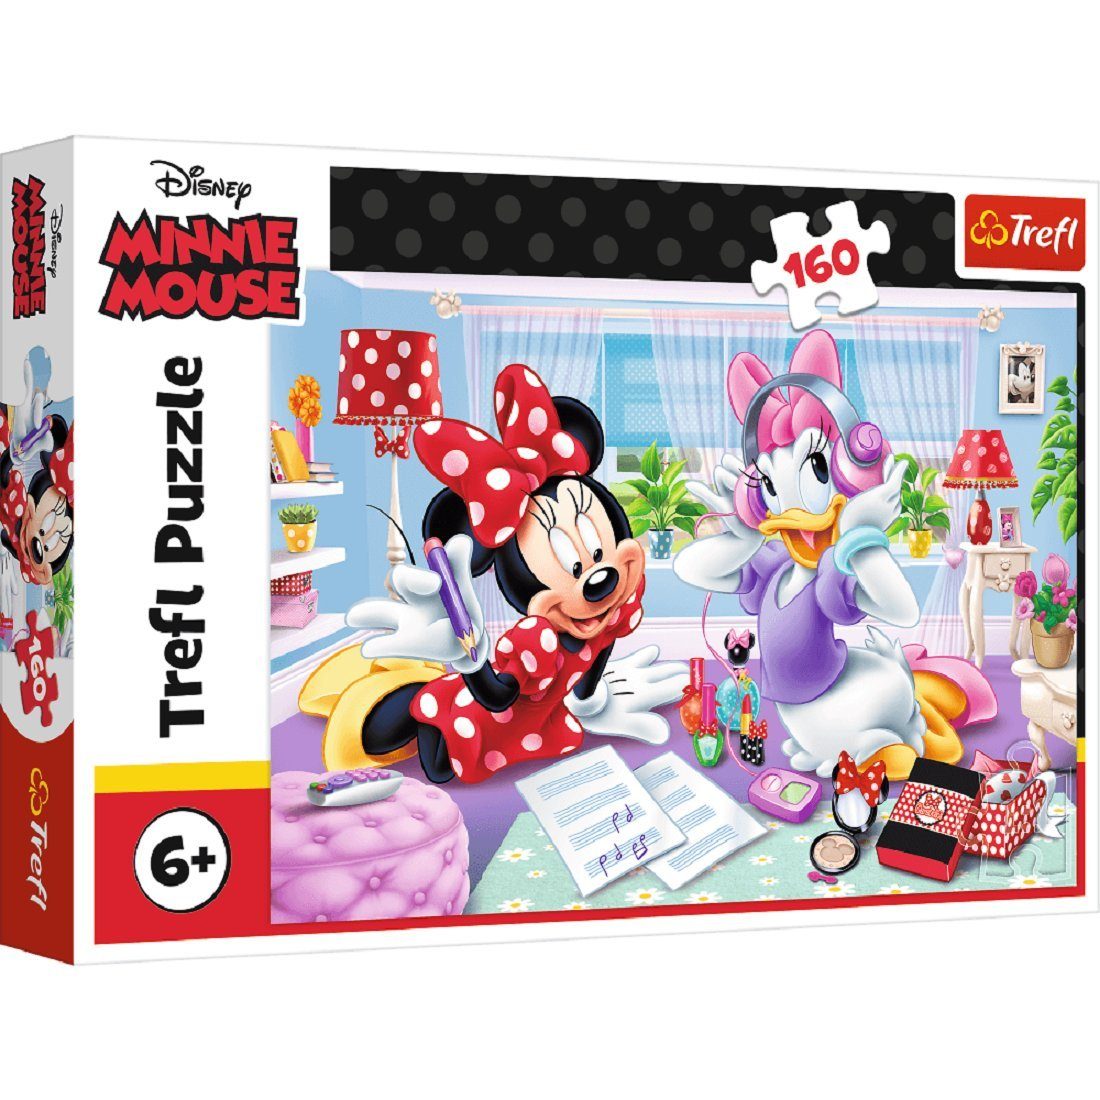 Kinderpuzzle, Minnie 160 and Puzzle Puzzle Puzzleteile Mouse Daisy Trefl Puzzleteile